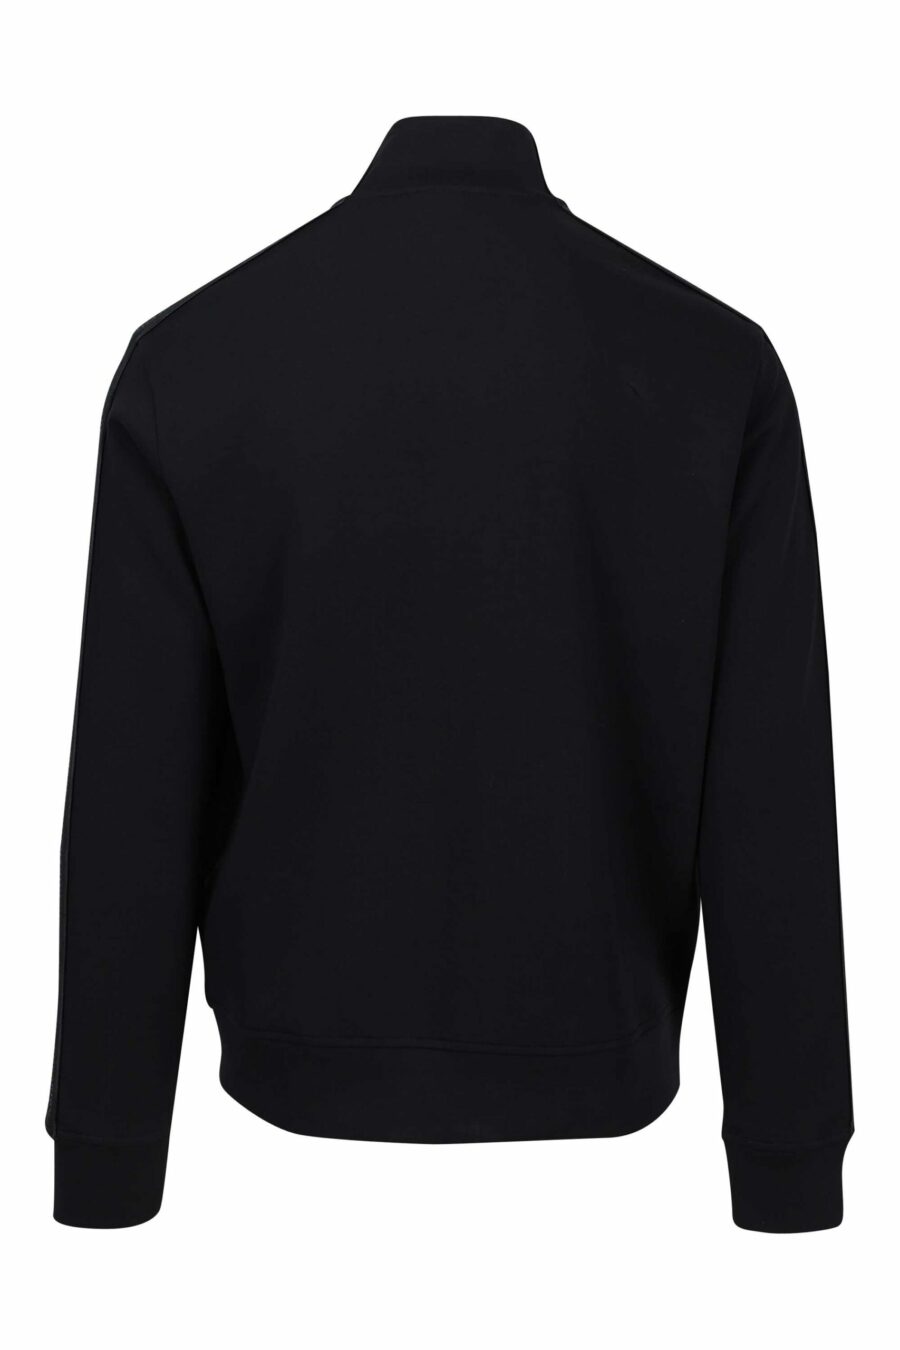 Schwarzes Rollkragen-Sweatshirt mit Seitenstreifen und Minilogue - 8057767454784 2 skaliert